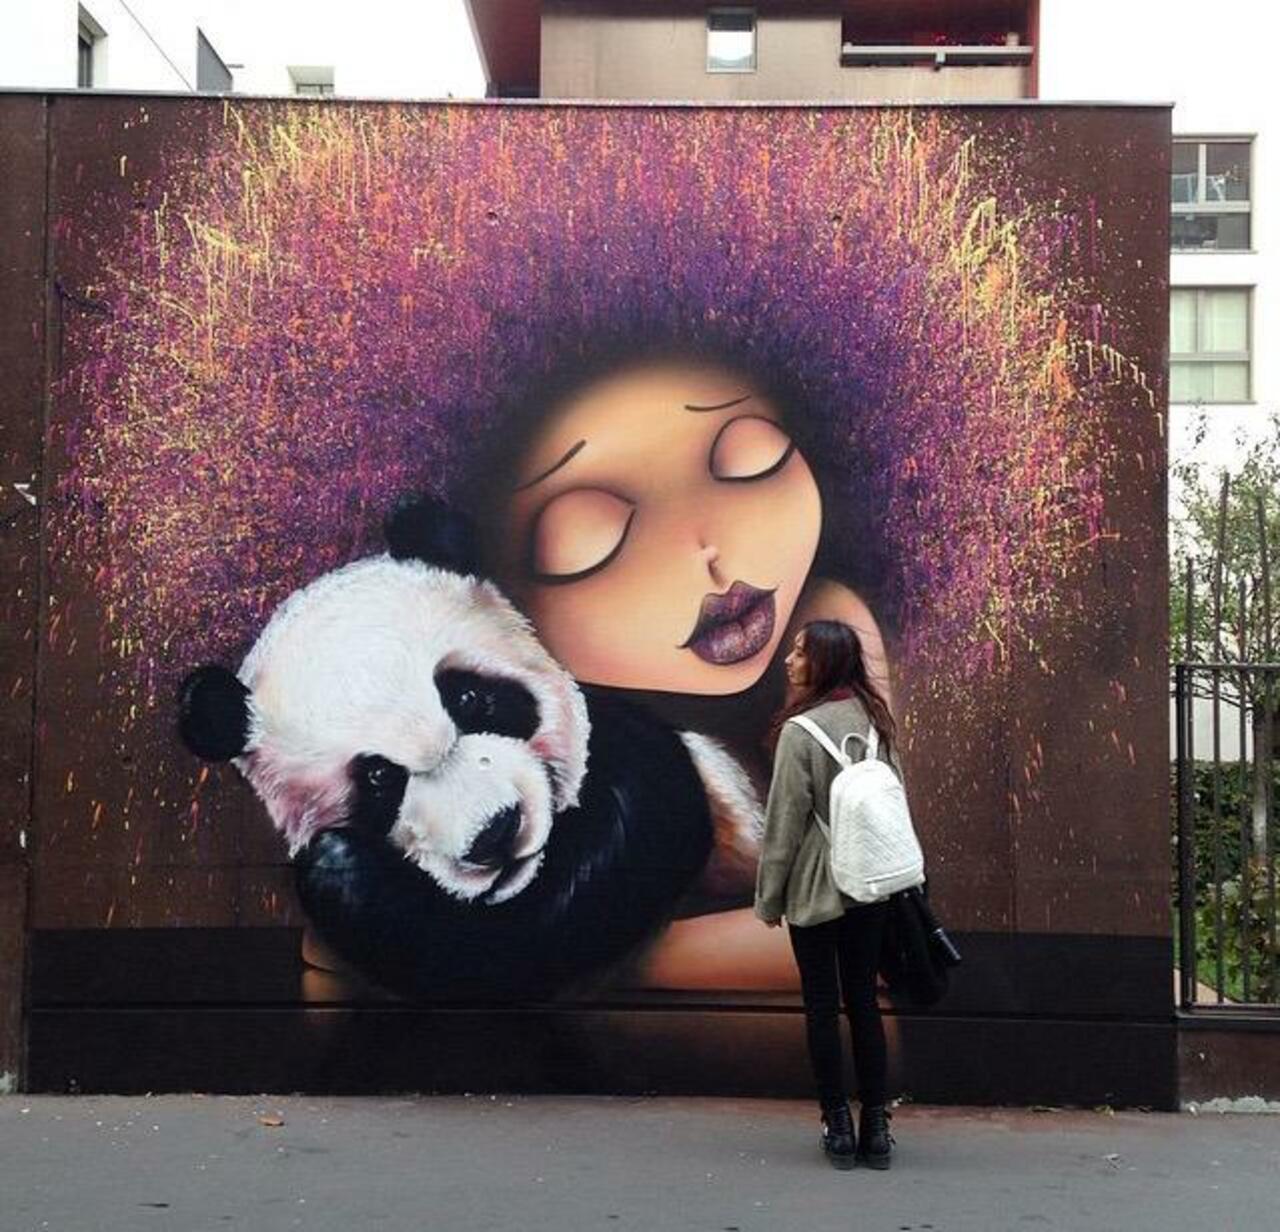 Street Art by VinieGraffiti in Paris 

#art #graffiti #mural #streetart http://t.co/Fz0JUI5x4s